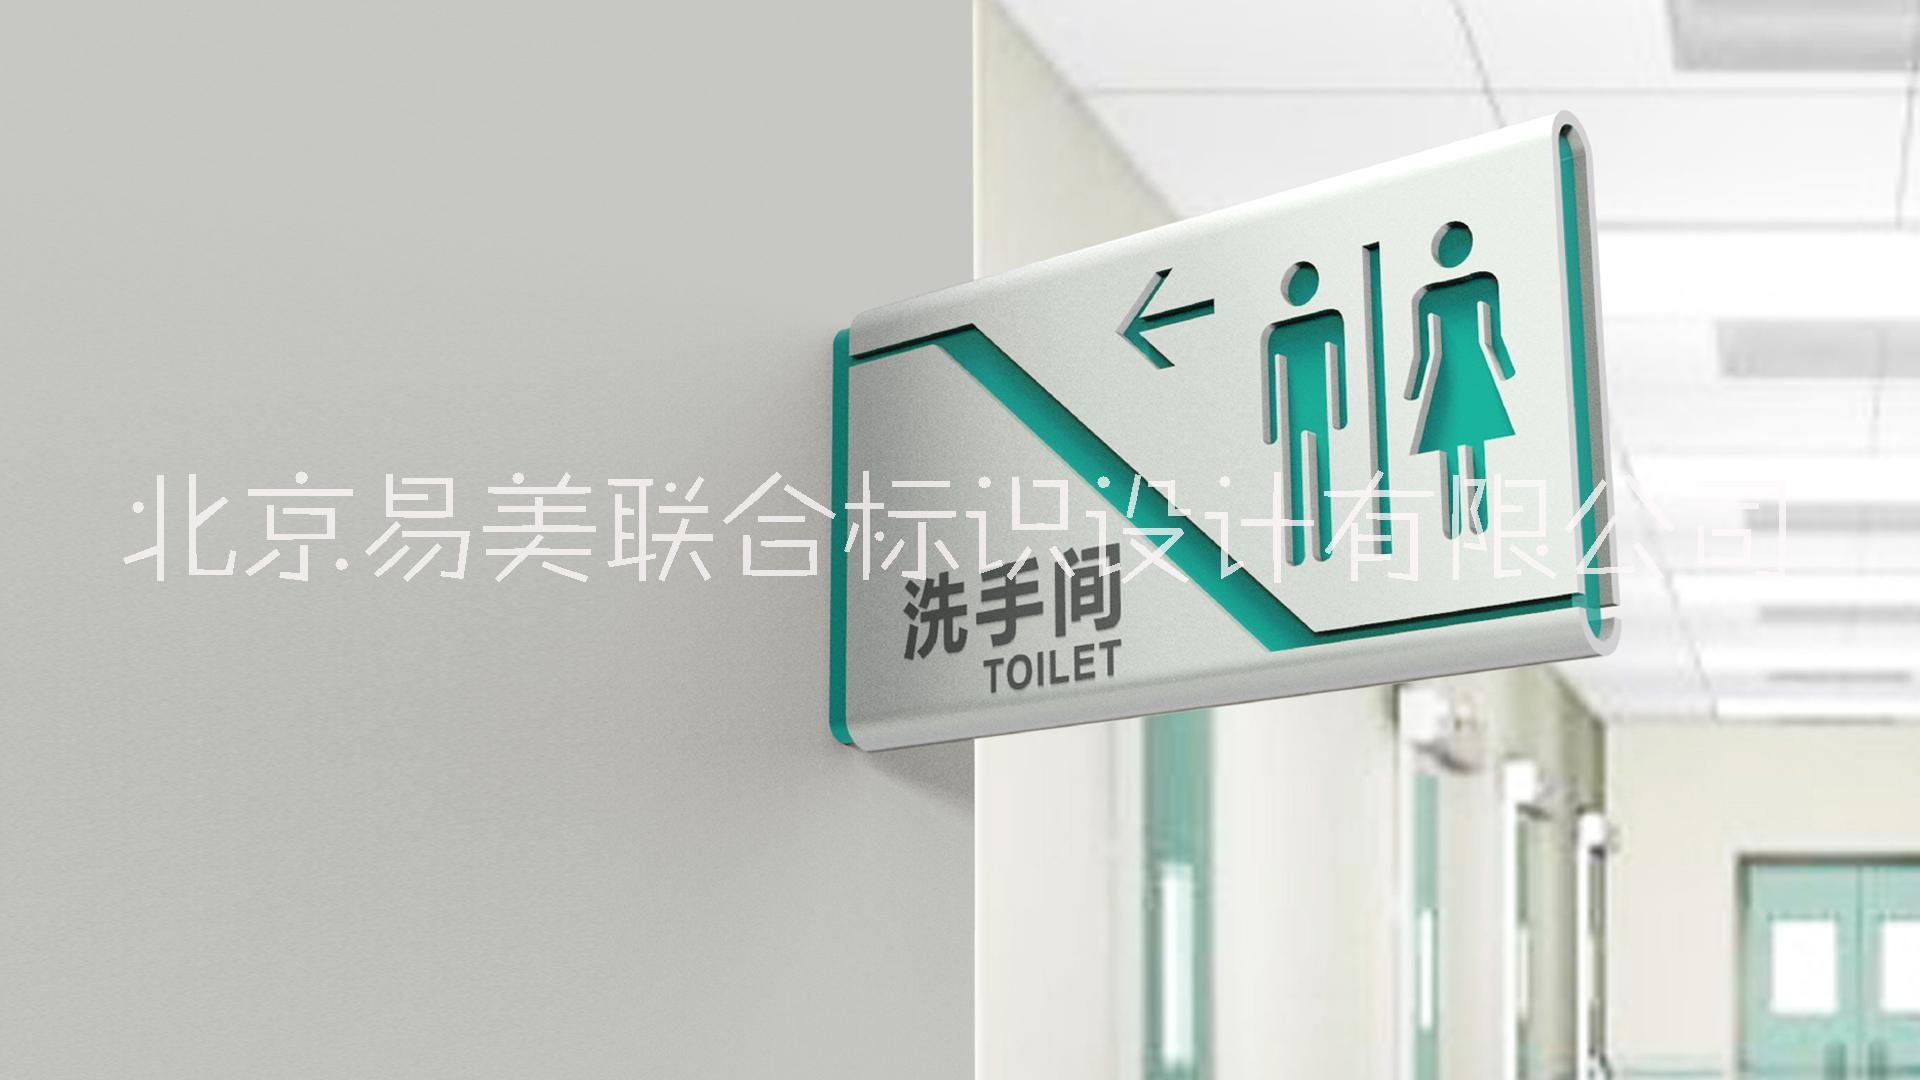 卫生间标识  卫生间标牌  卫生间牌子   男女卫生间标识